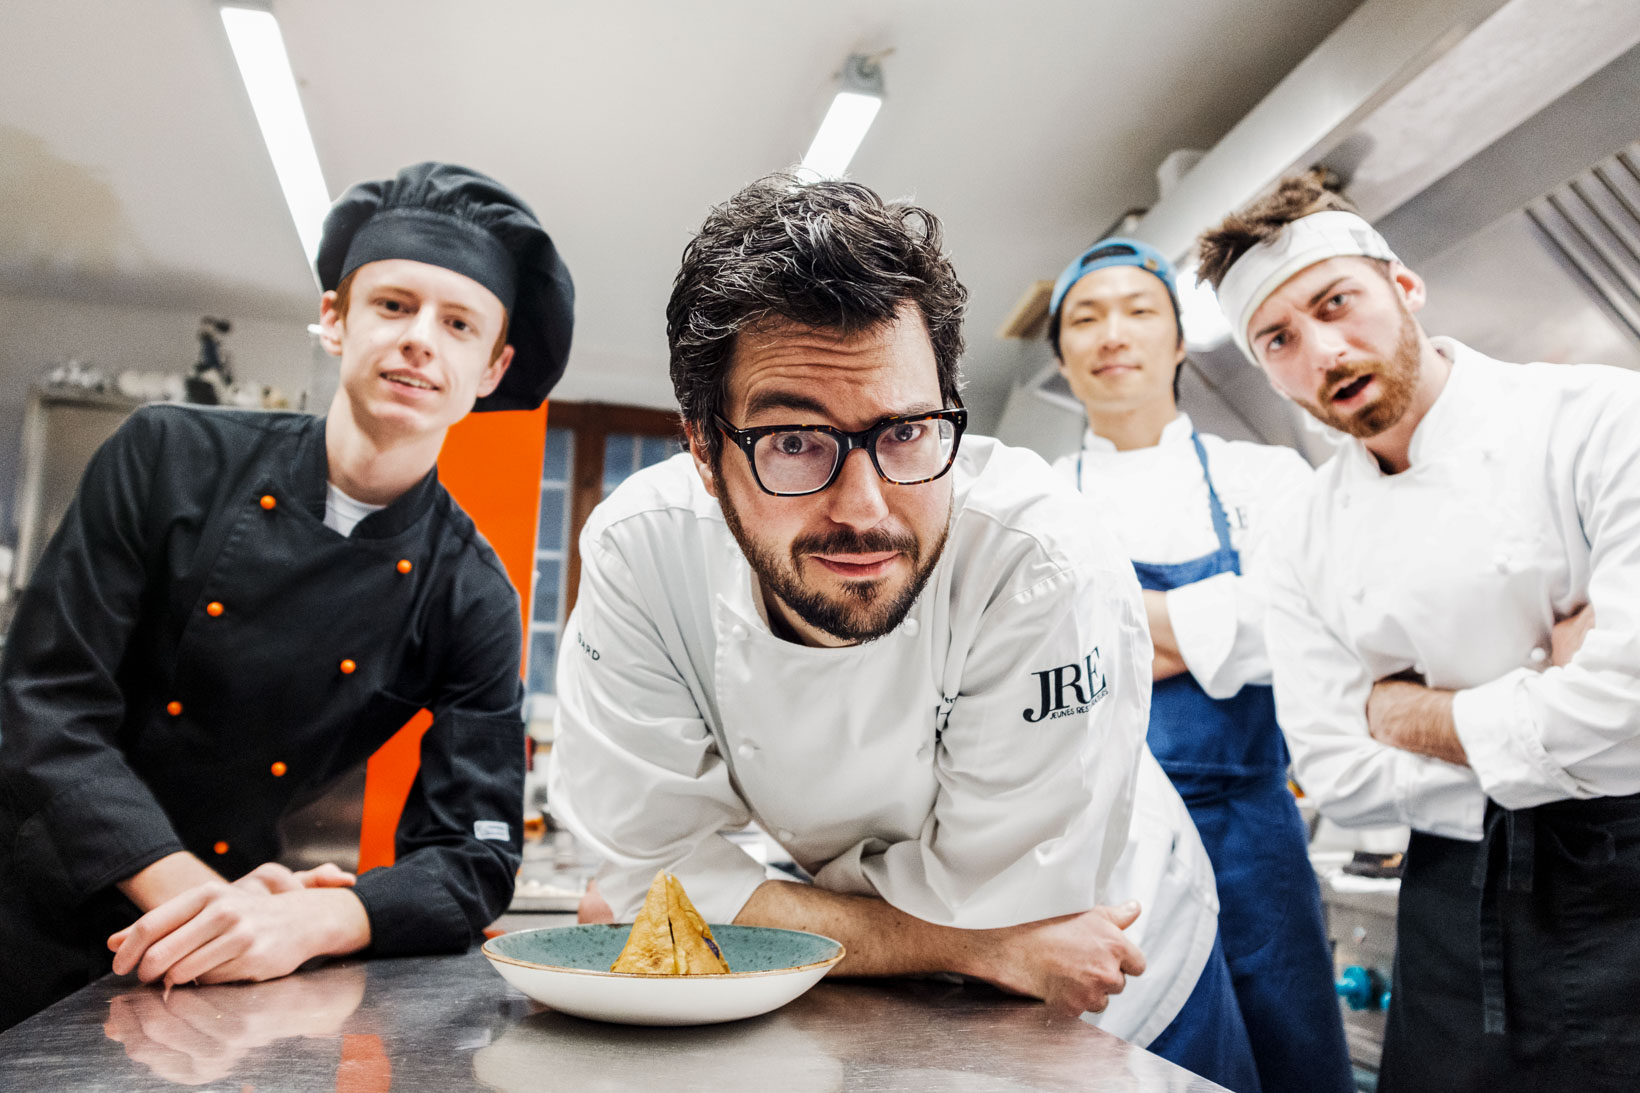 Rui-Lorenzo-Fotografo-food-chef-fabrizio-ferrari-ristorante-al-porticciolo-84-lecco-jre-_X1F1632_p_web